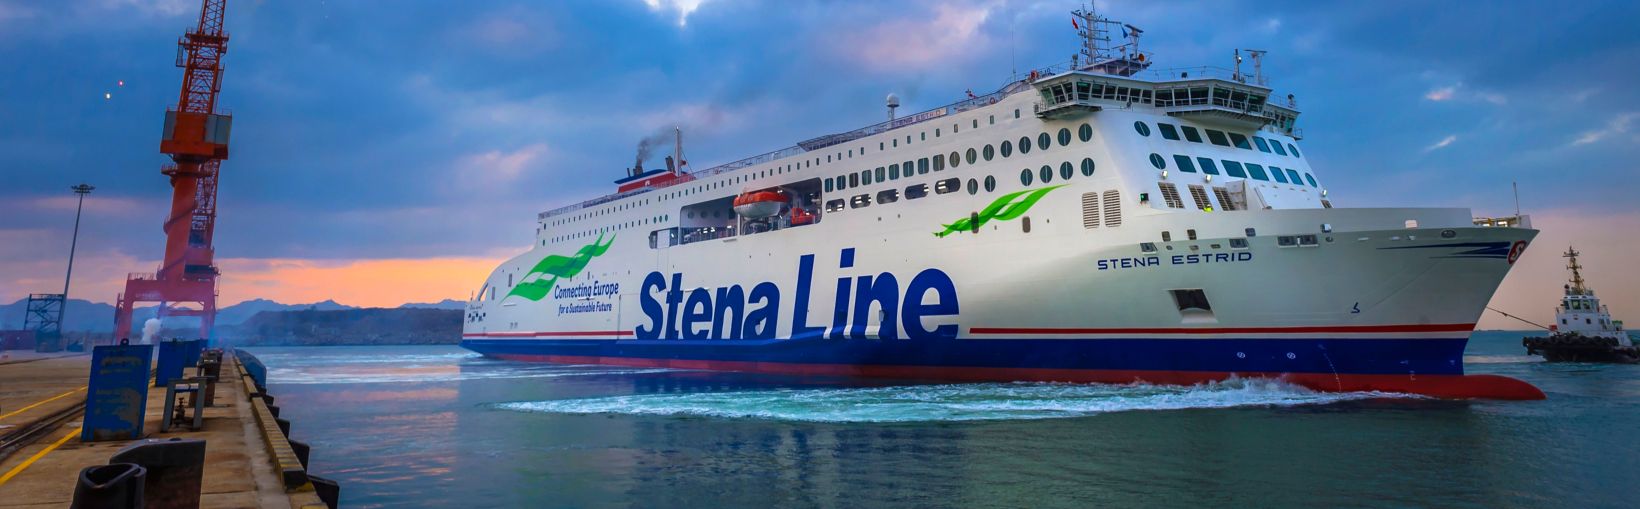 Stena Estrid ferry verlaat de haven